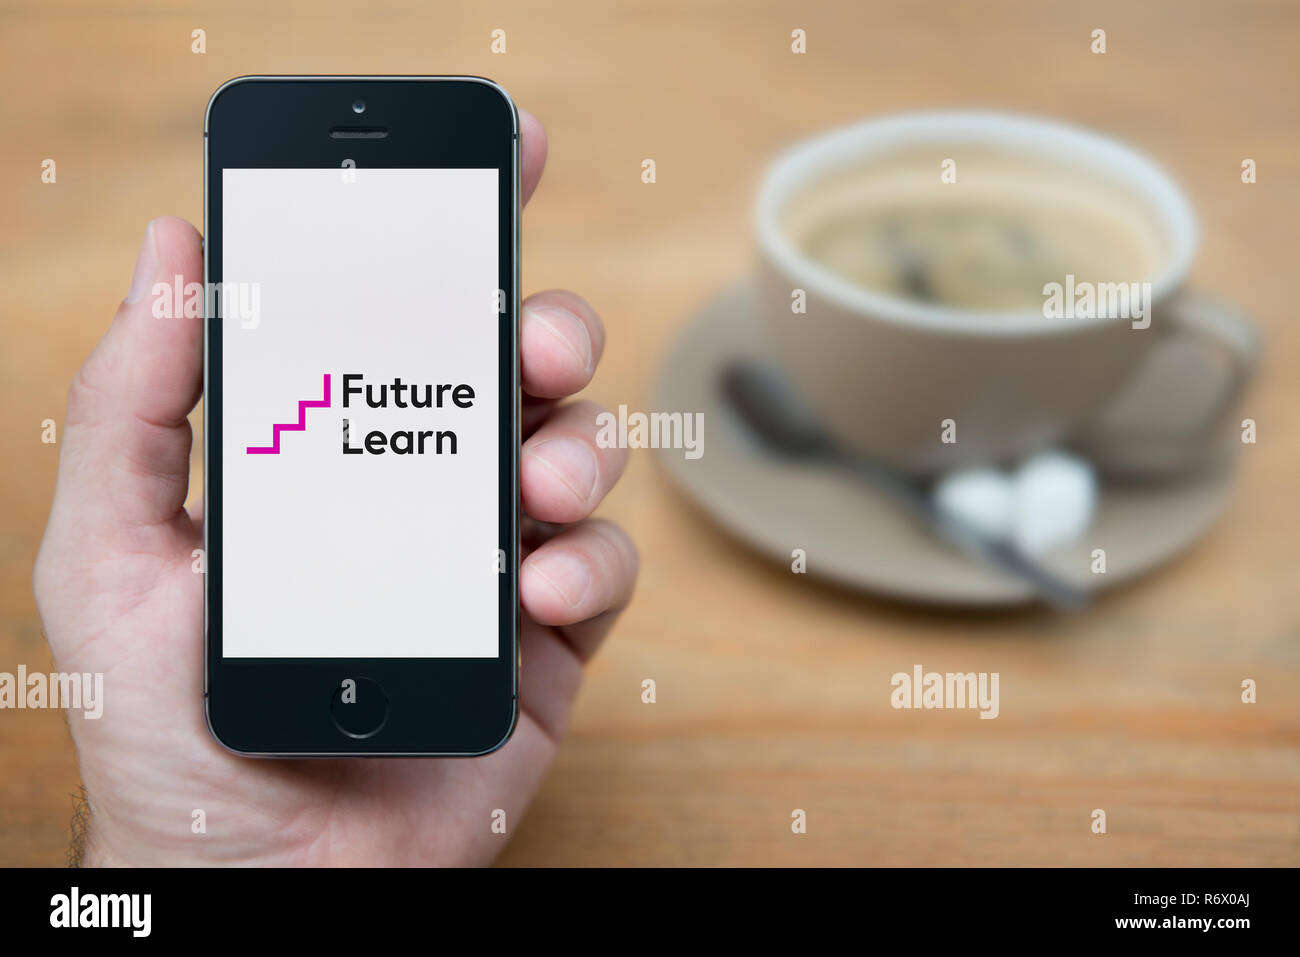 Un homme se penche sur son iPhone qui affiche l'avenir apprendre logo (usage éditorial uniquement). Banque D'Images